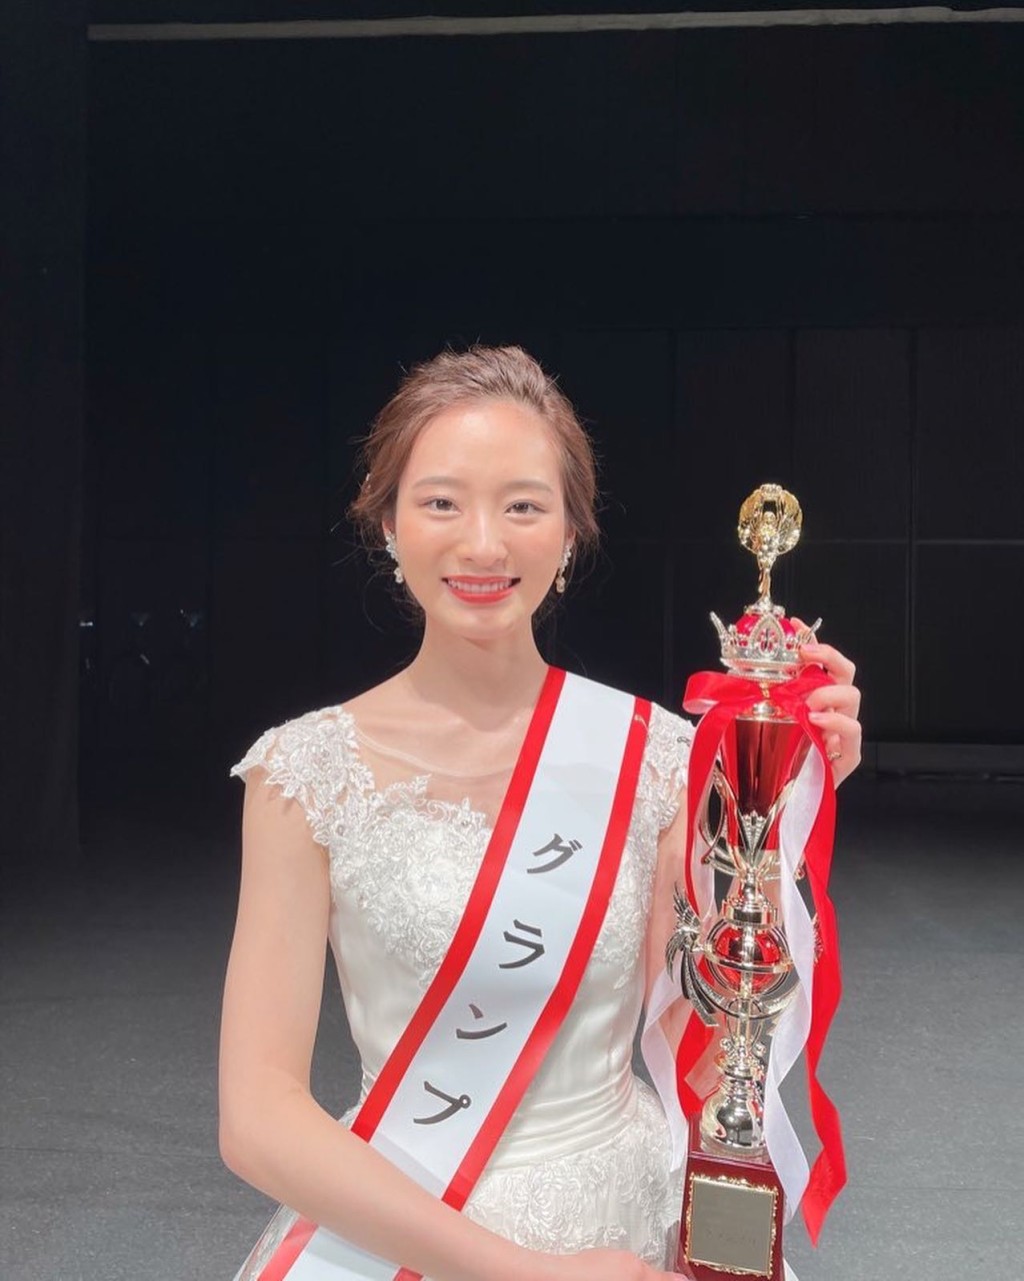 神谷明采在2021年春季獲得「Miss of Miss」日本校園美女最大賞。 IG@asa_kamiya